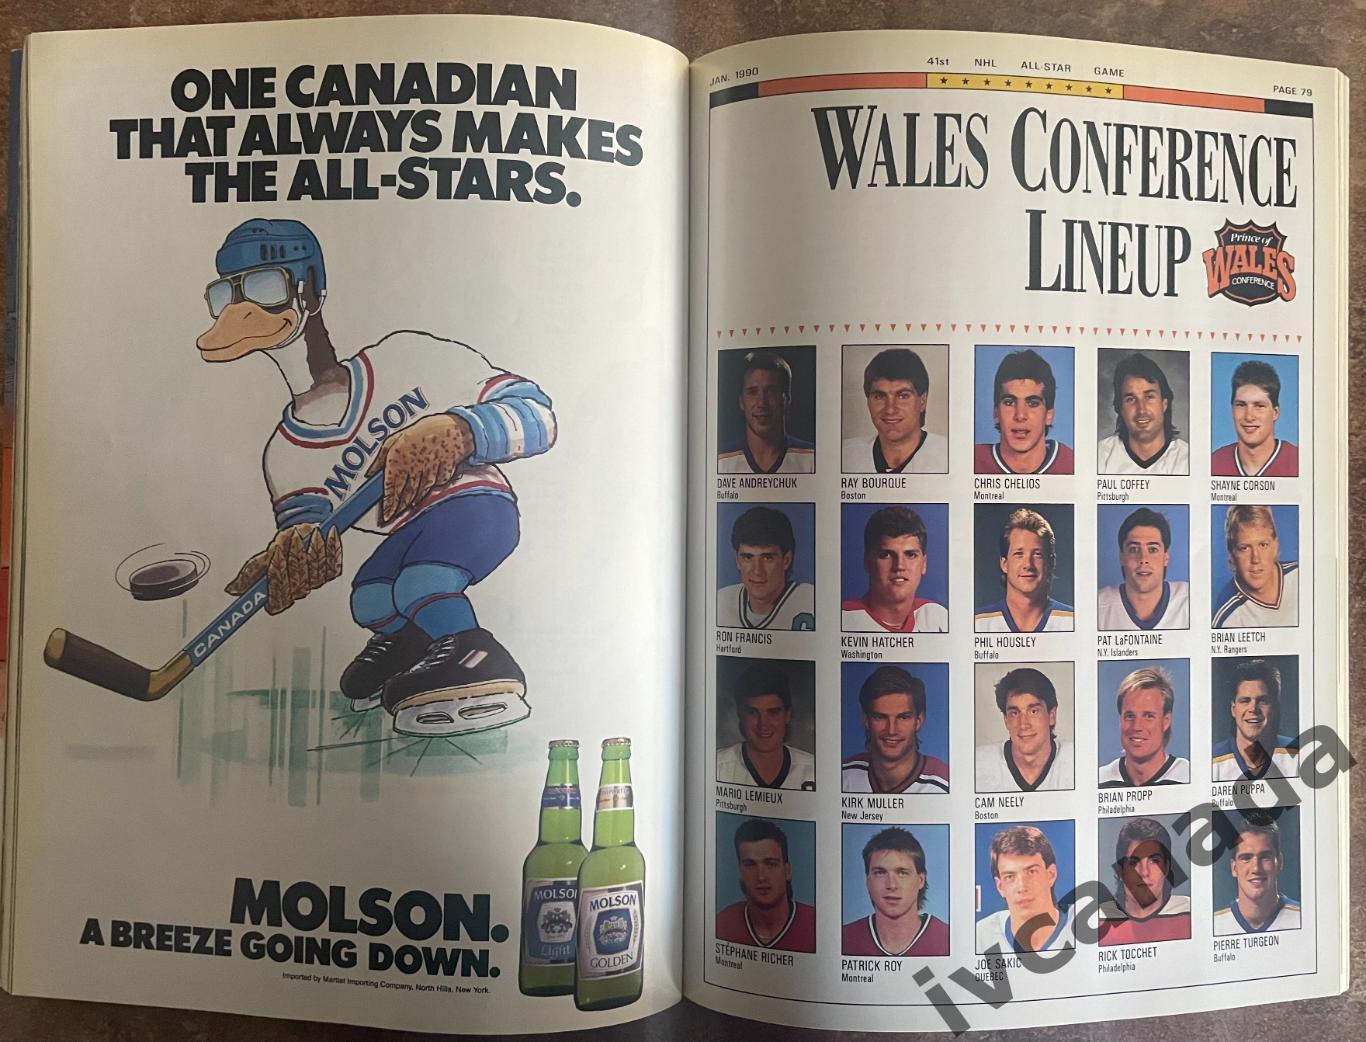 Матч всех звезд НХЛ 1990(ALL STAR GAME NHL). 20-21 января 1990 г. Питтсбург, США 6